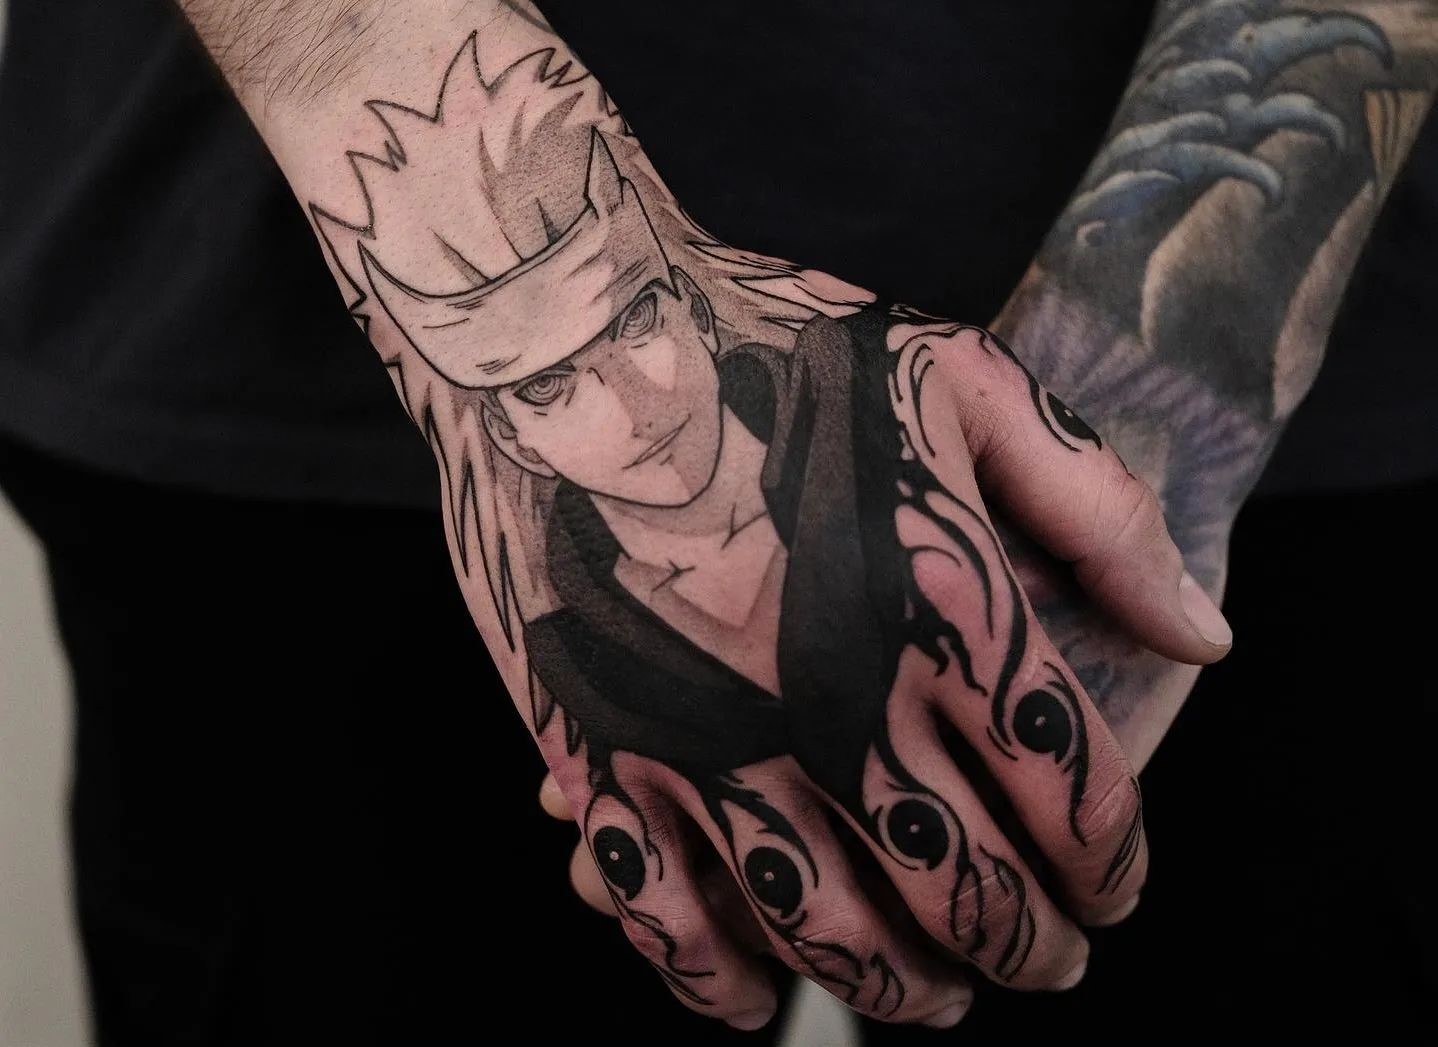 Fun Naruto tattoo from last week!#naruto #narutotattoo #sasuke #sasuke... |  TikTok